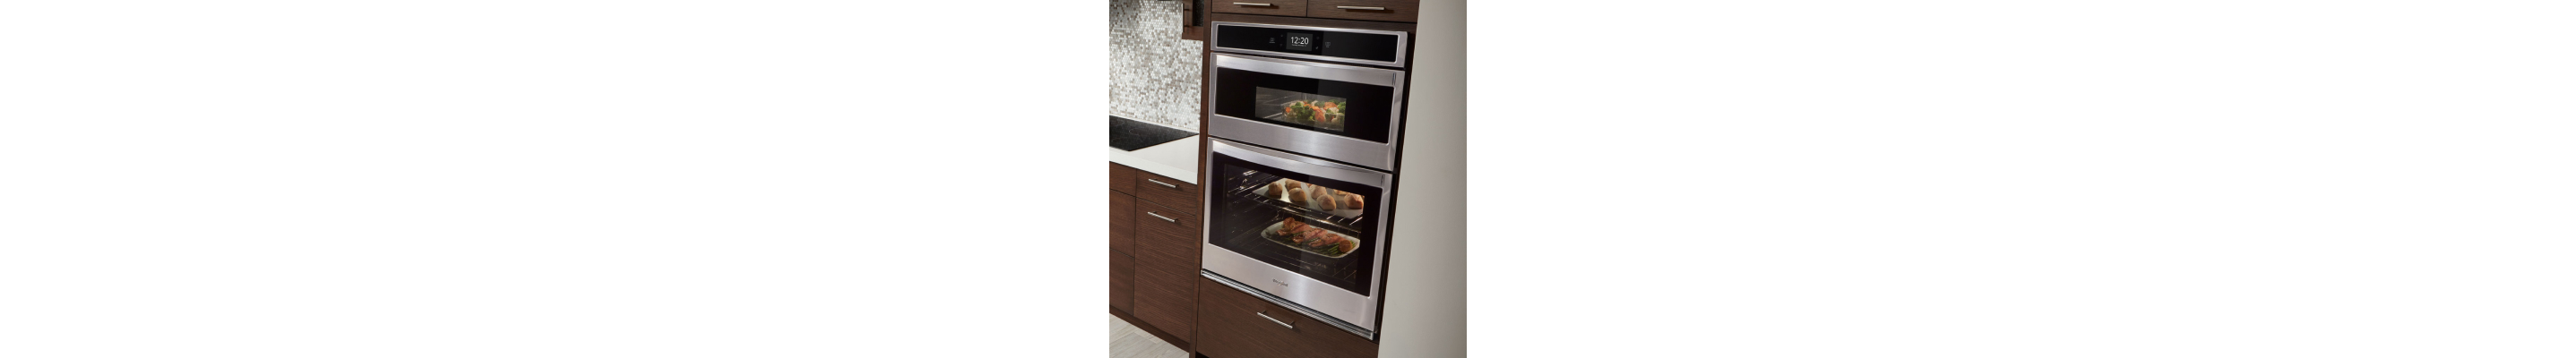 惠而浦®不锈钢组合墙烤箱设置成木质完成橱柜。